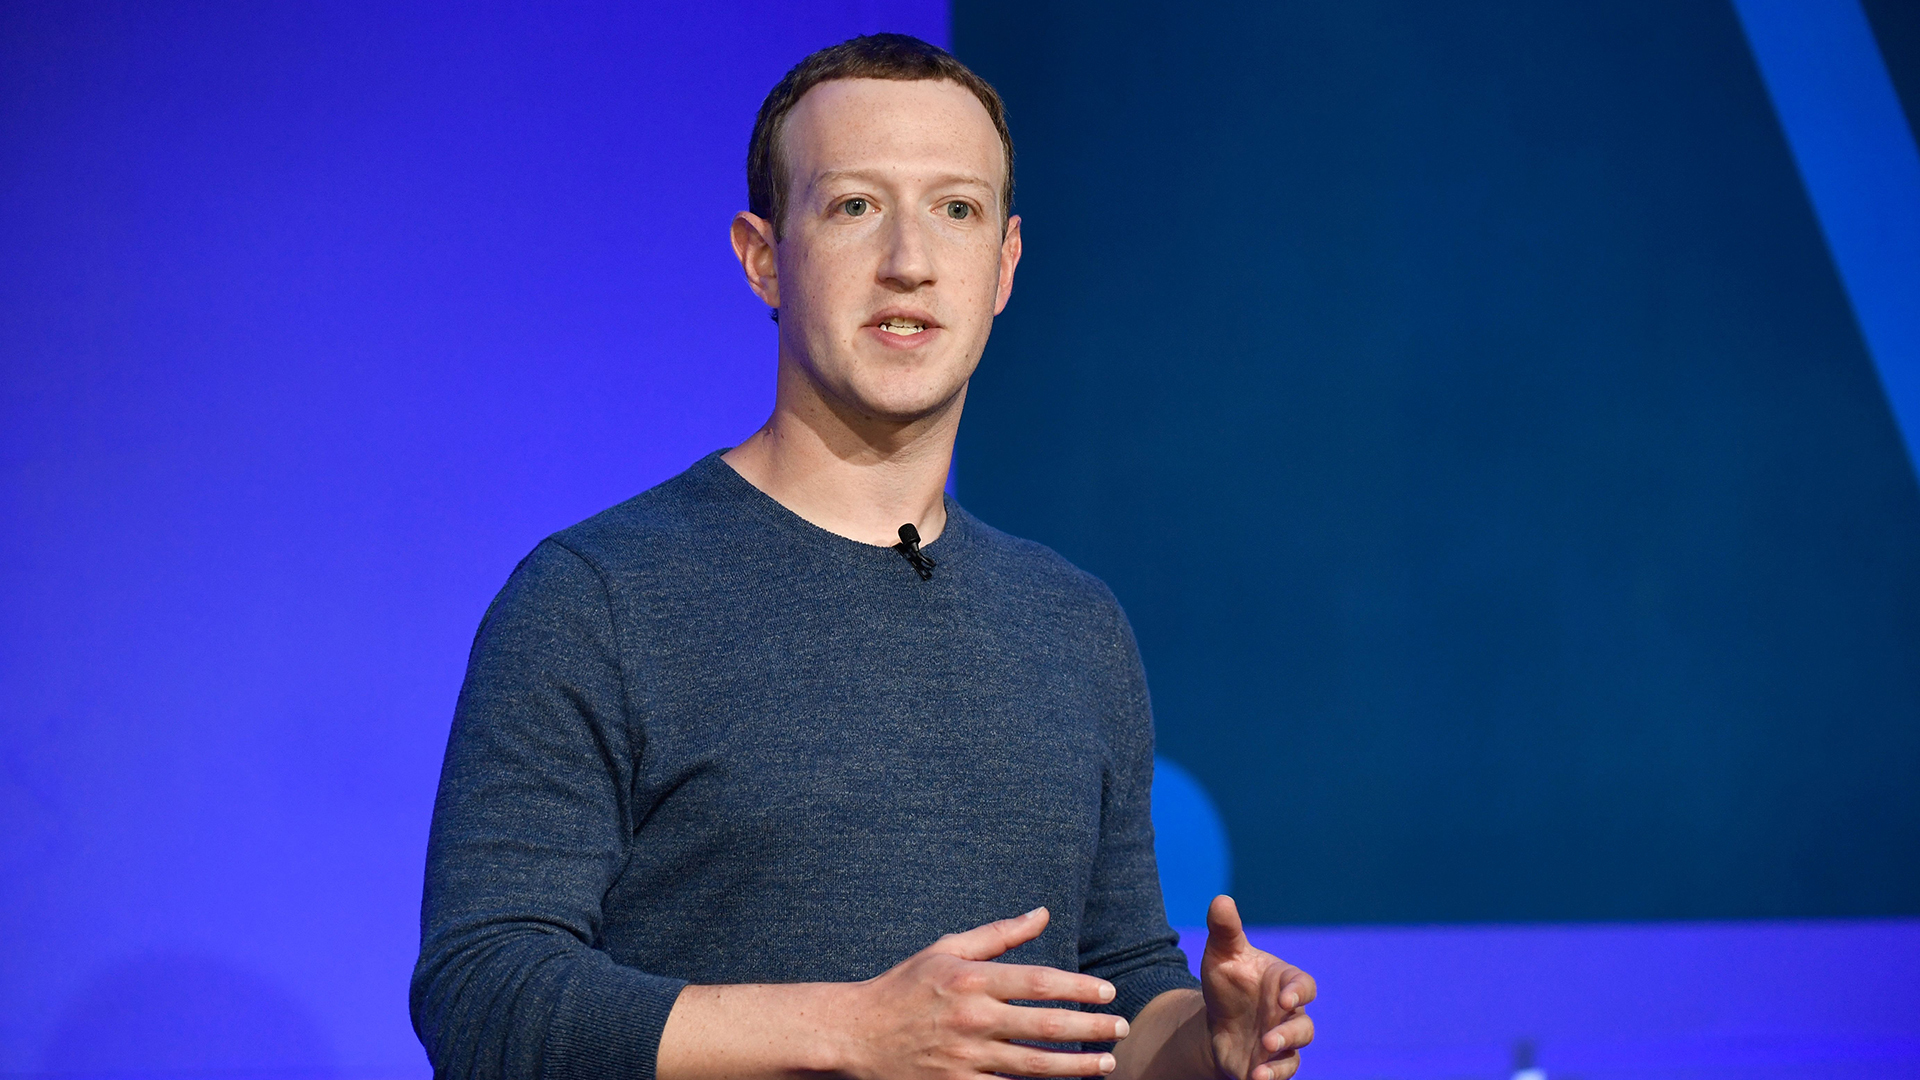 Facebook CEO Mark Zuckerberg Announces Plans To Pay Creators $1B Through 2022